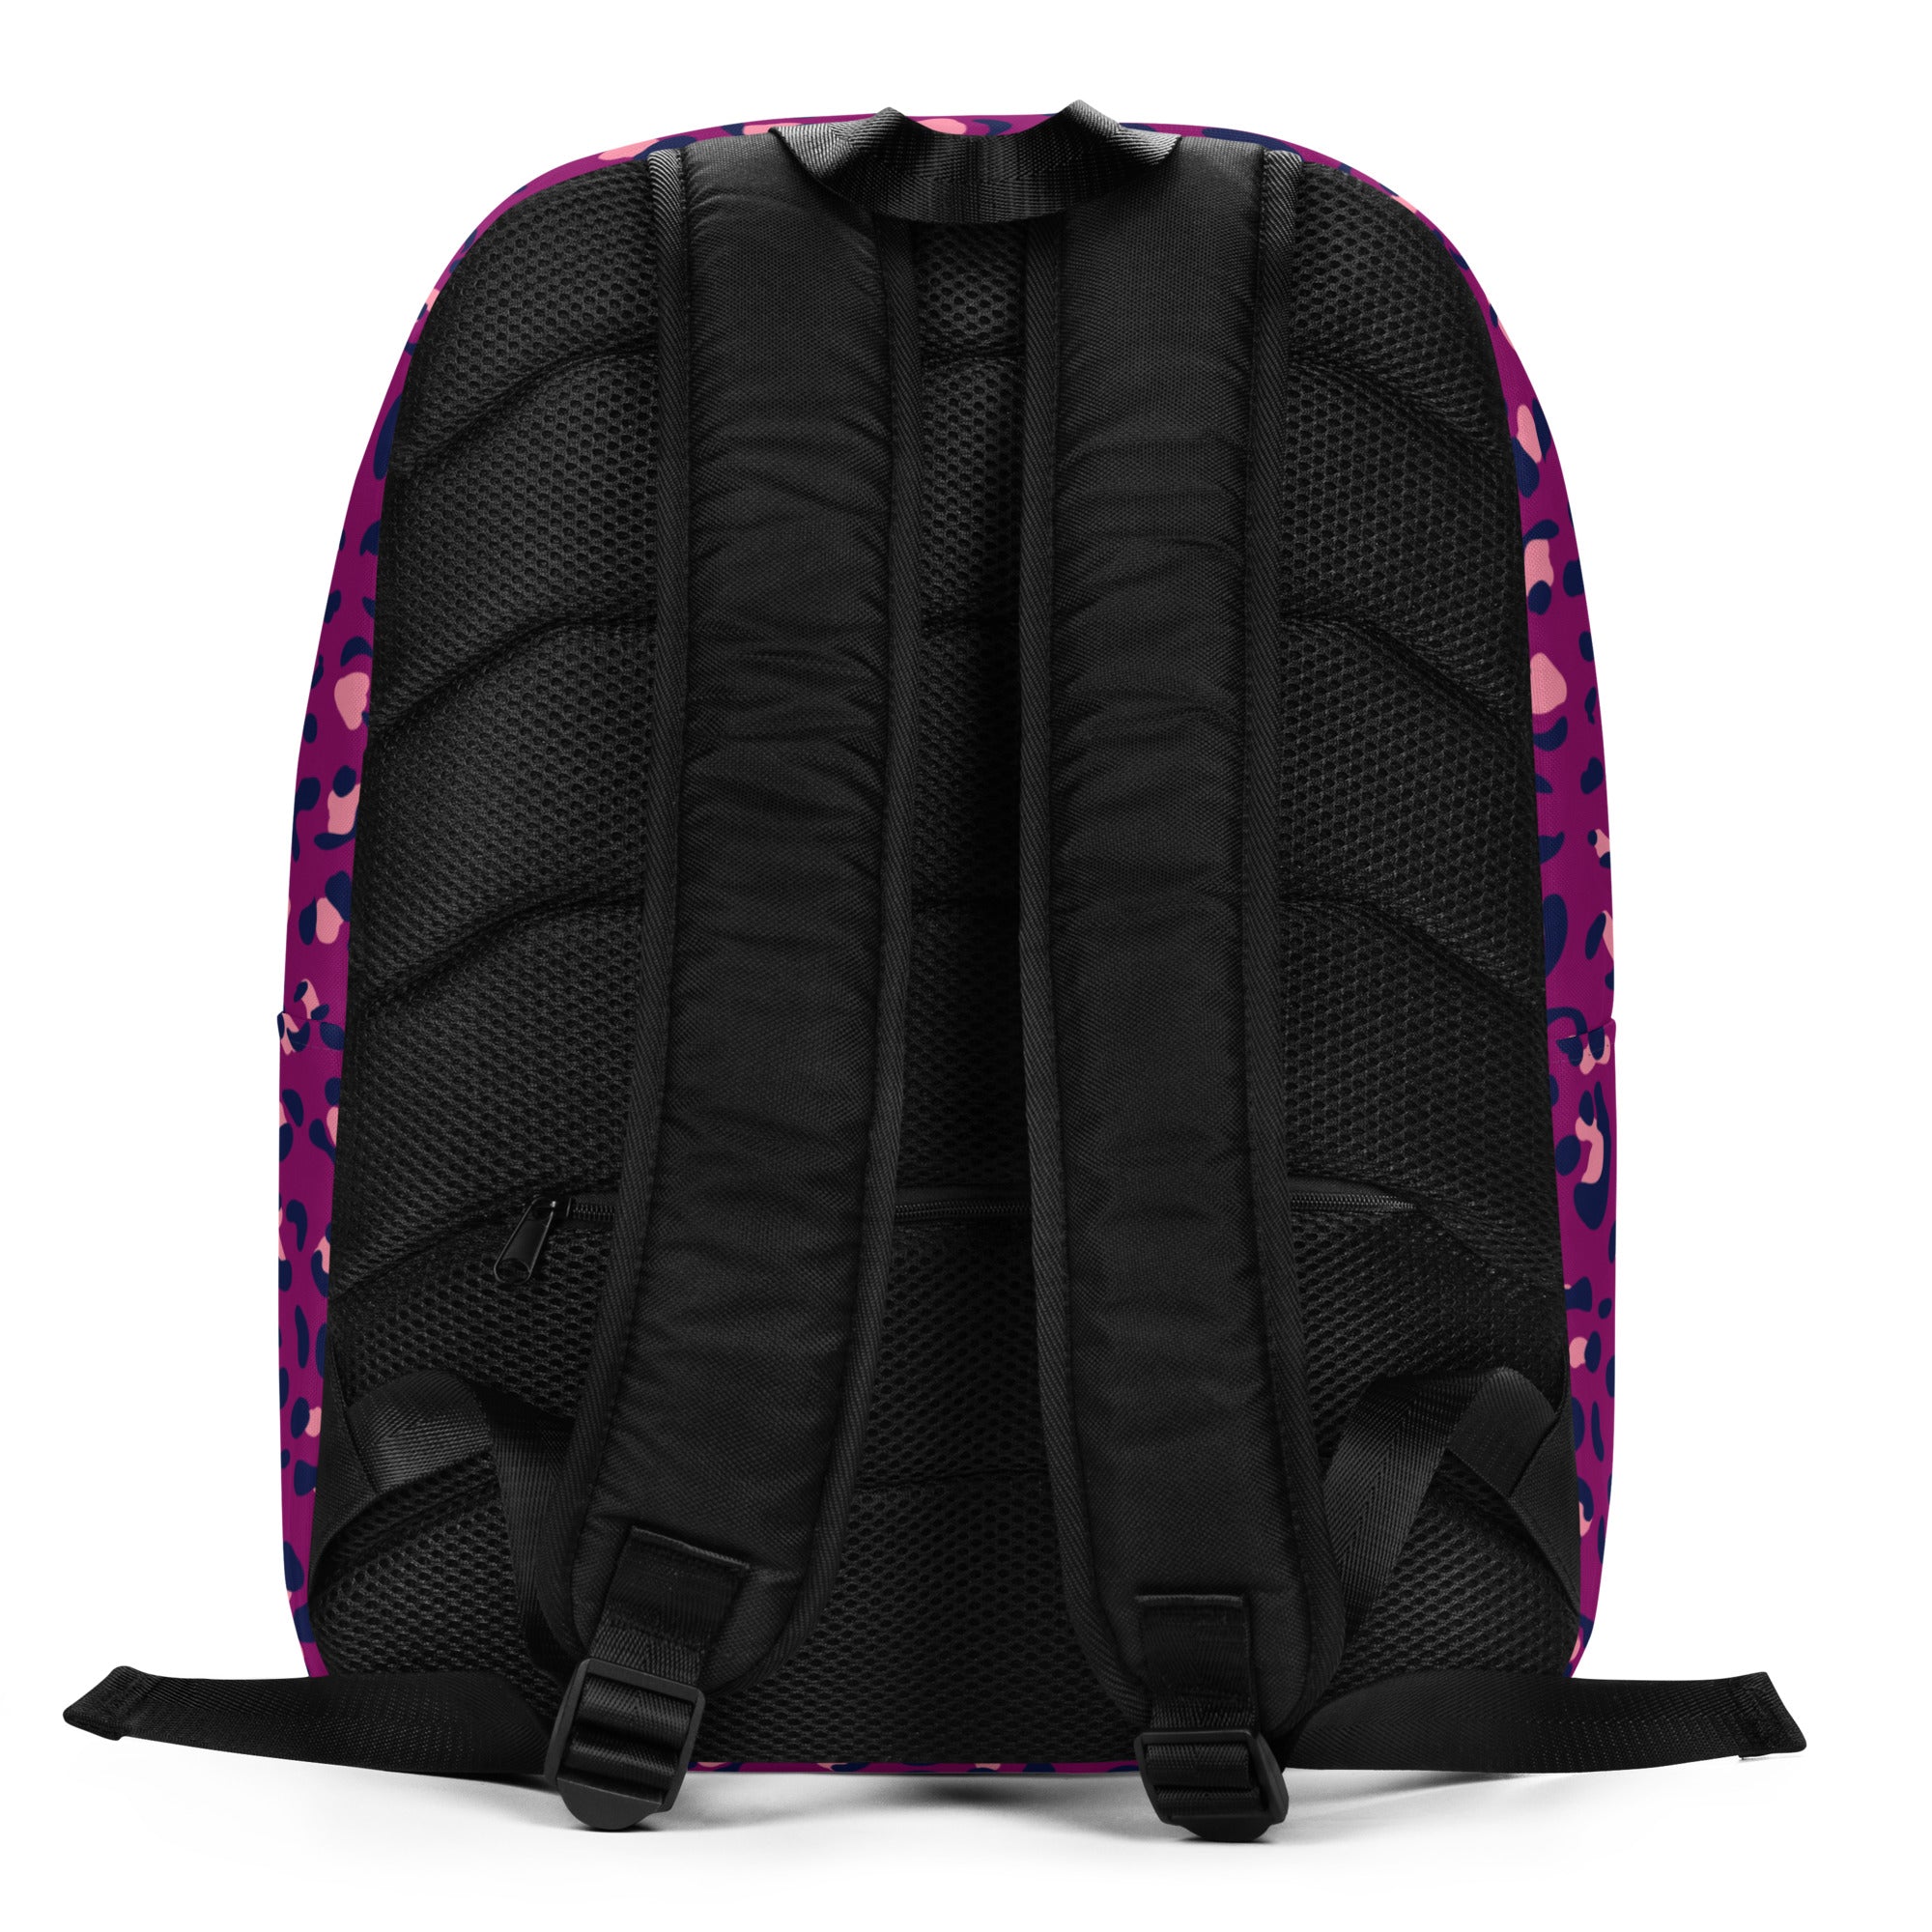 Minimalist Backpack- Leopard Print Purple